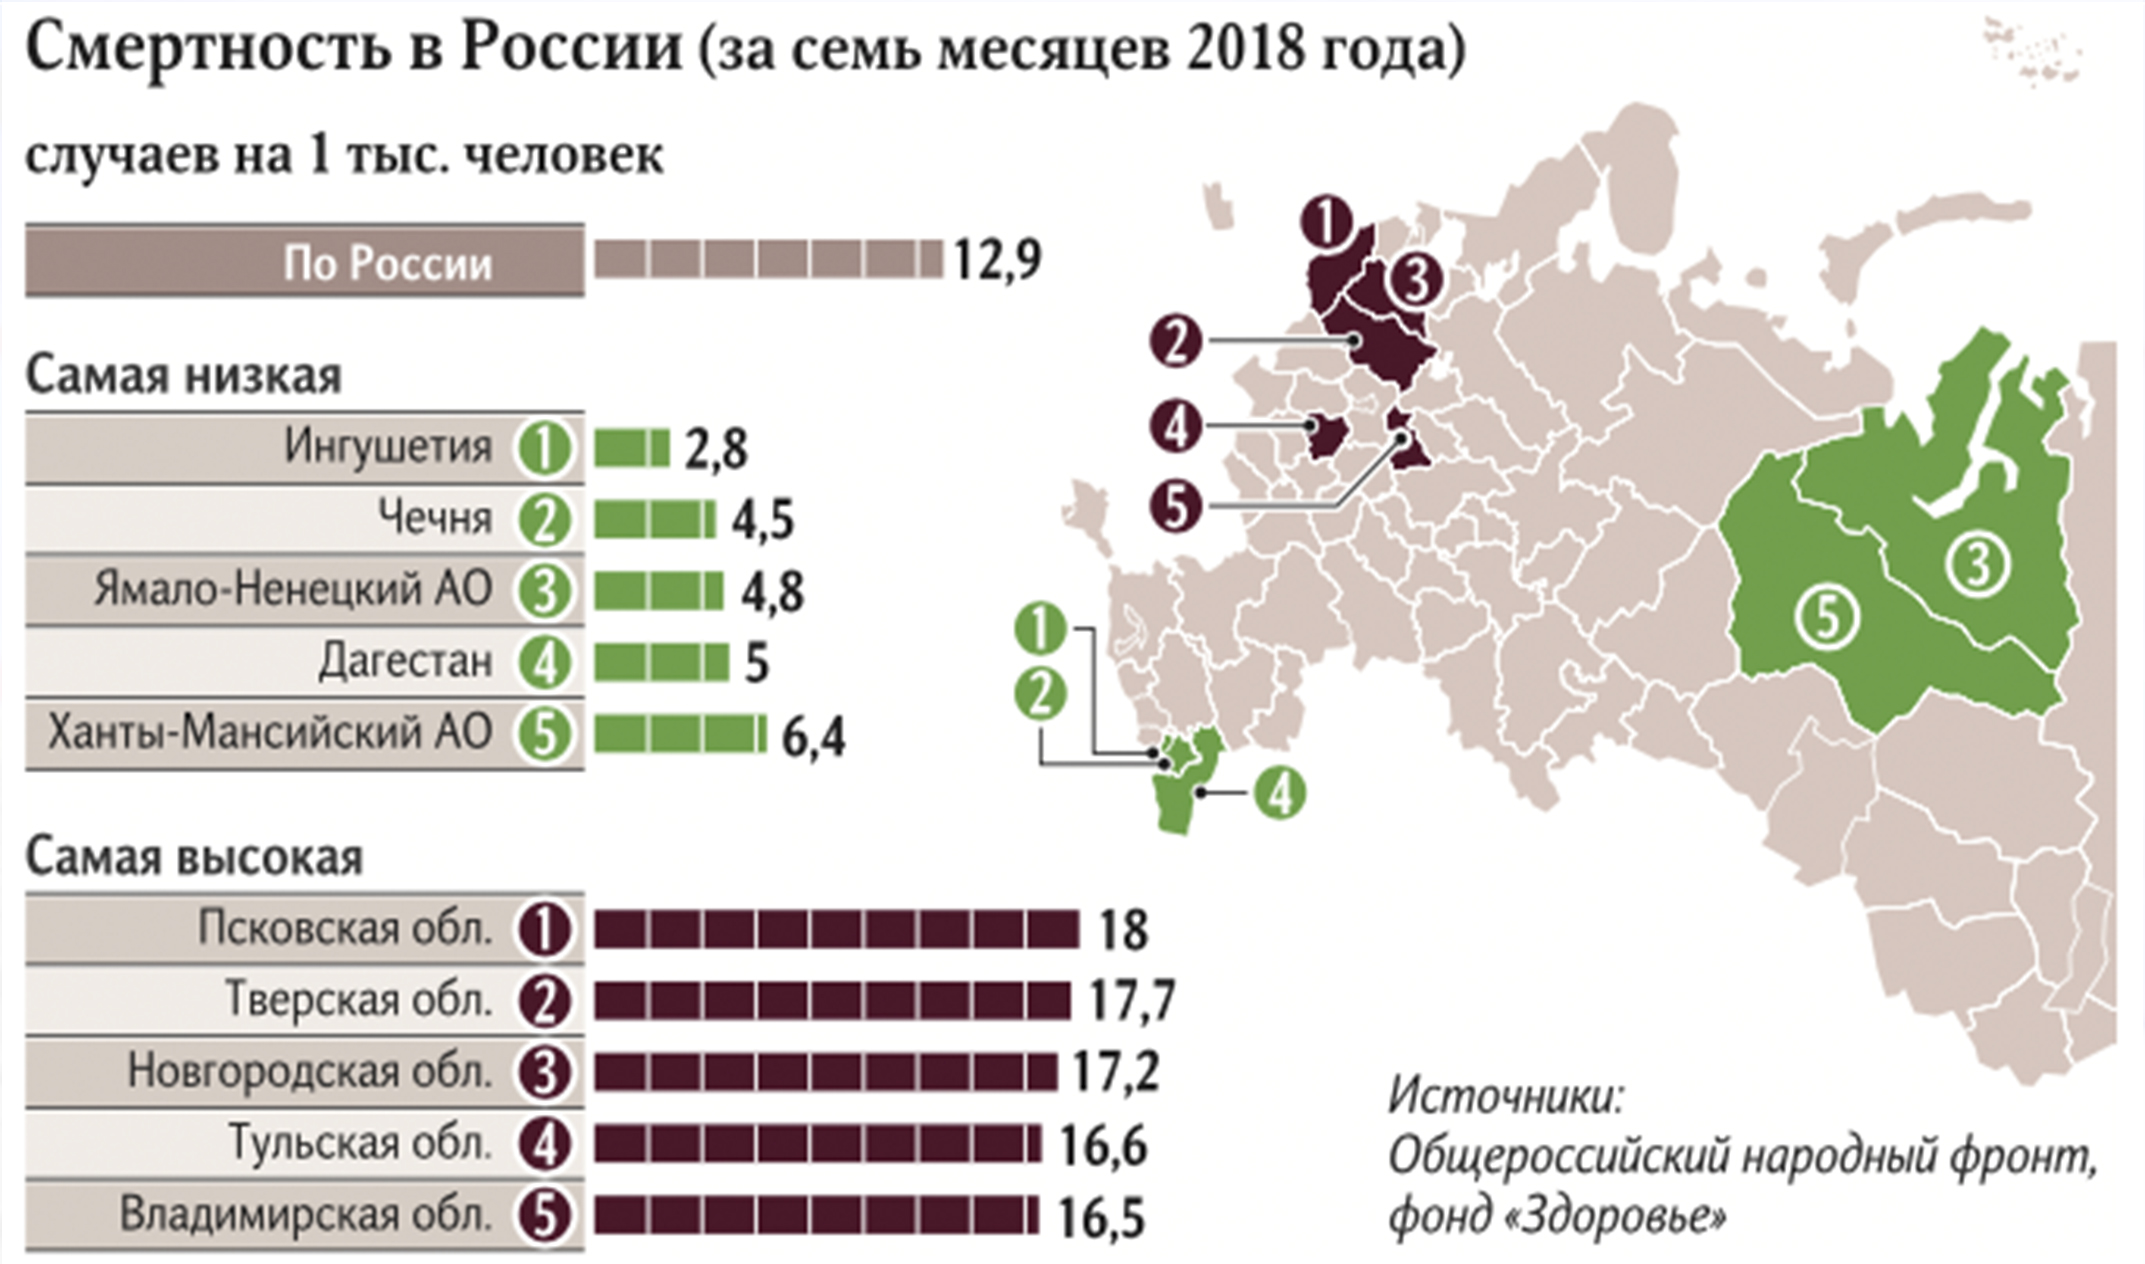 Чечня входит в тройку регионов России с низкой смертностью